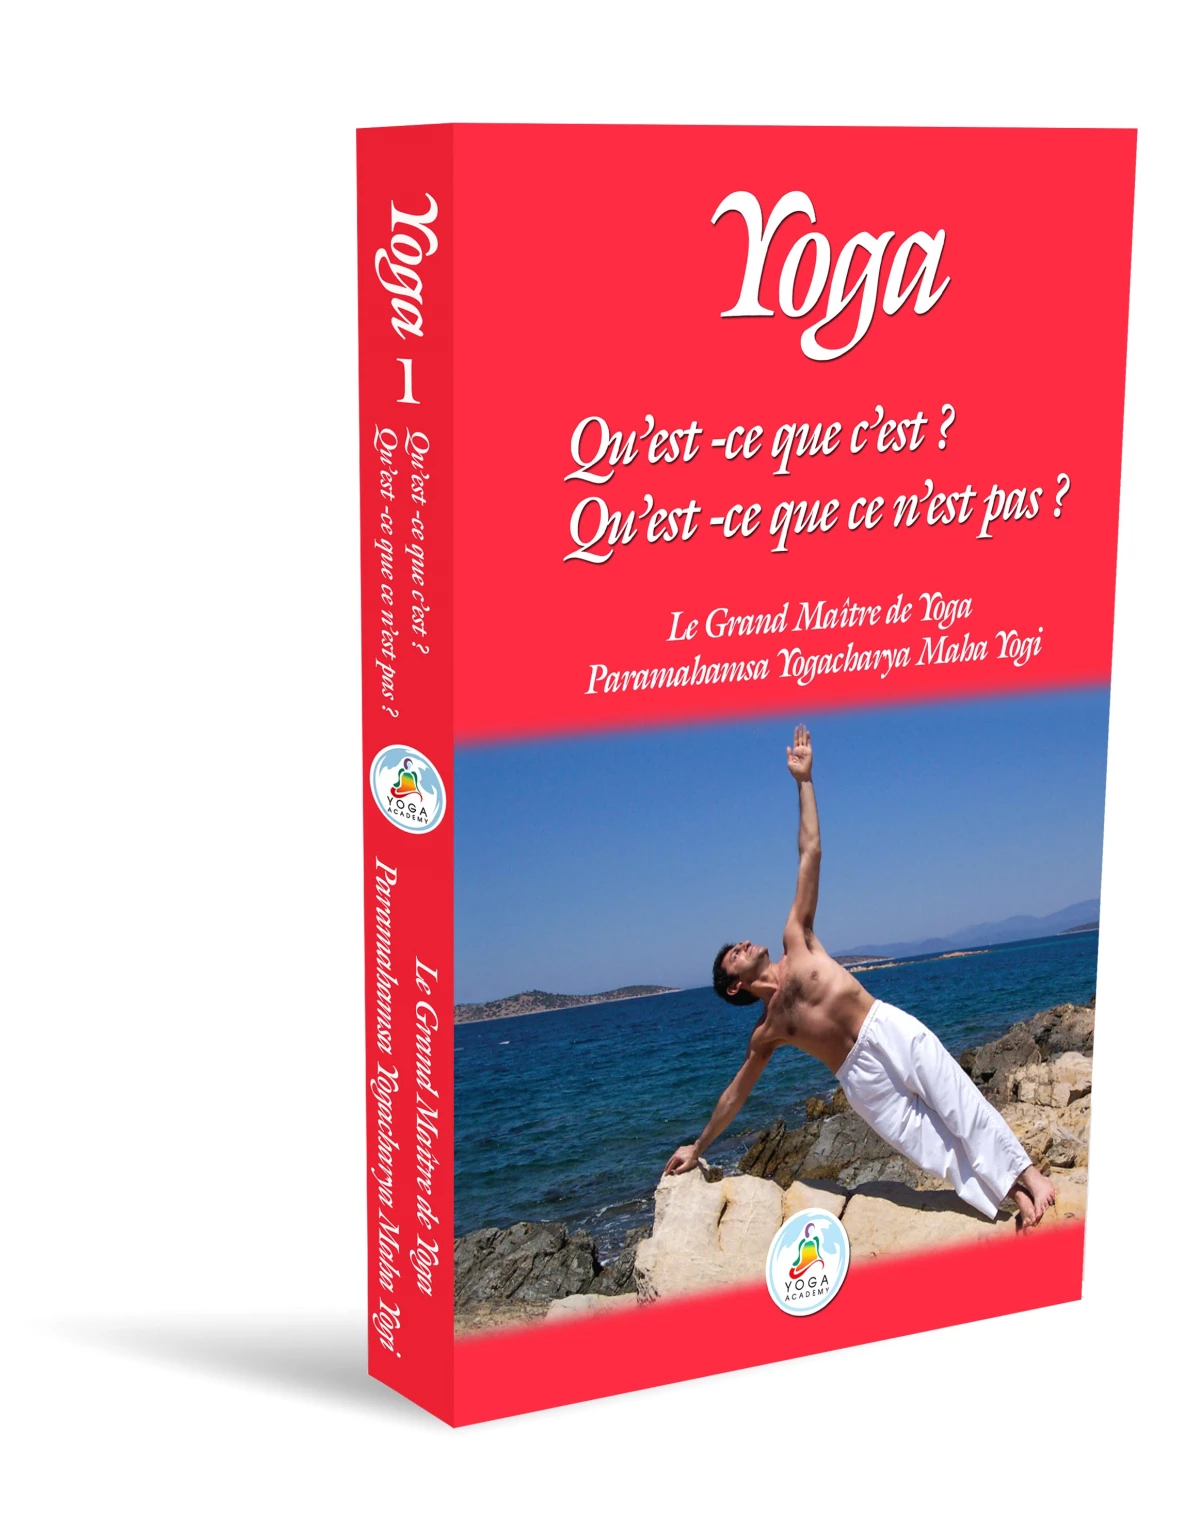 Yoga Kitabı Fransızca Olarak Yayınlandı!